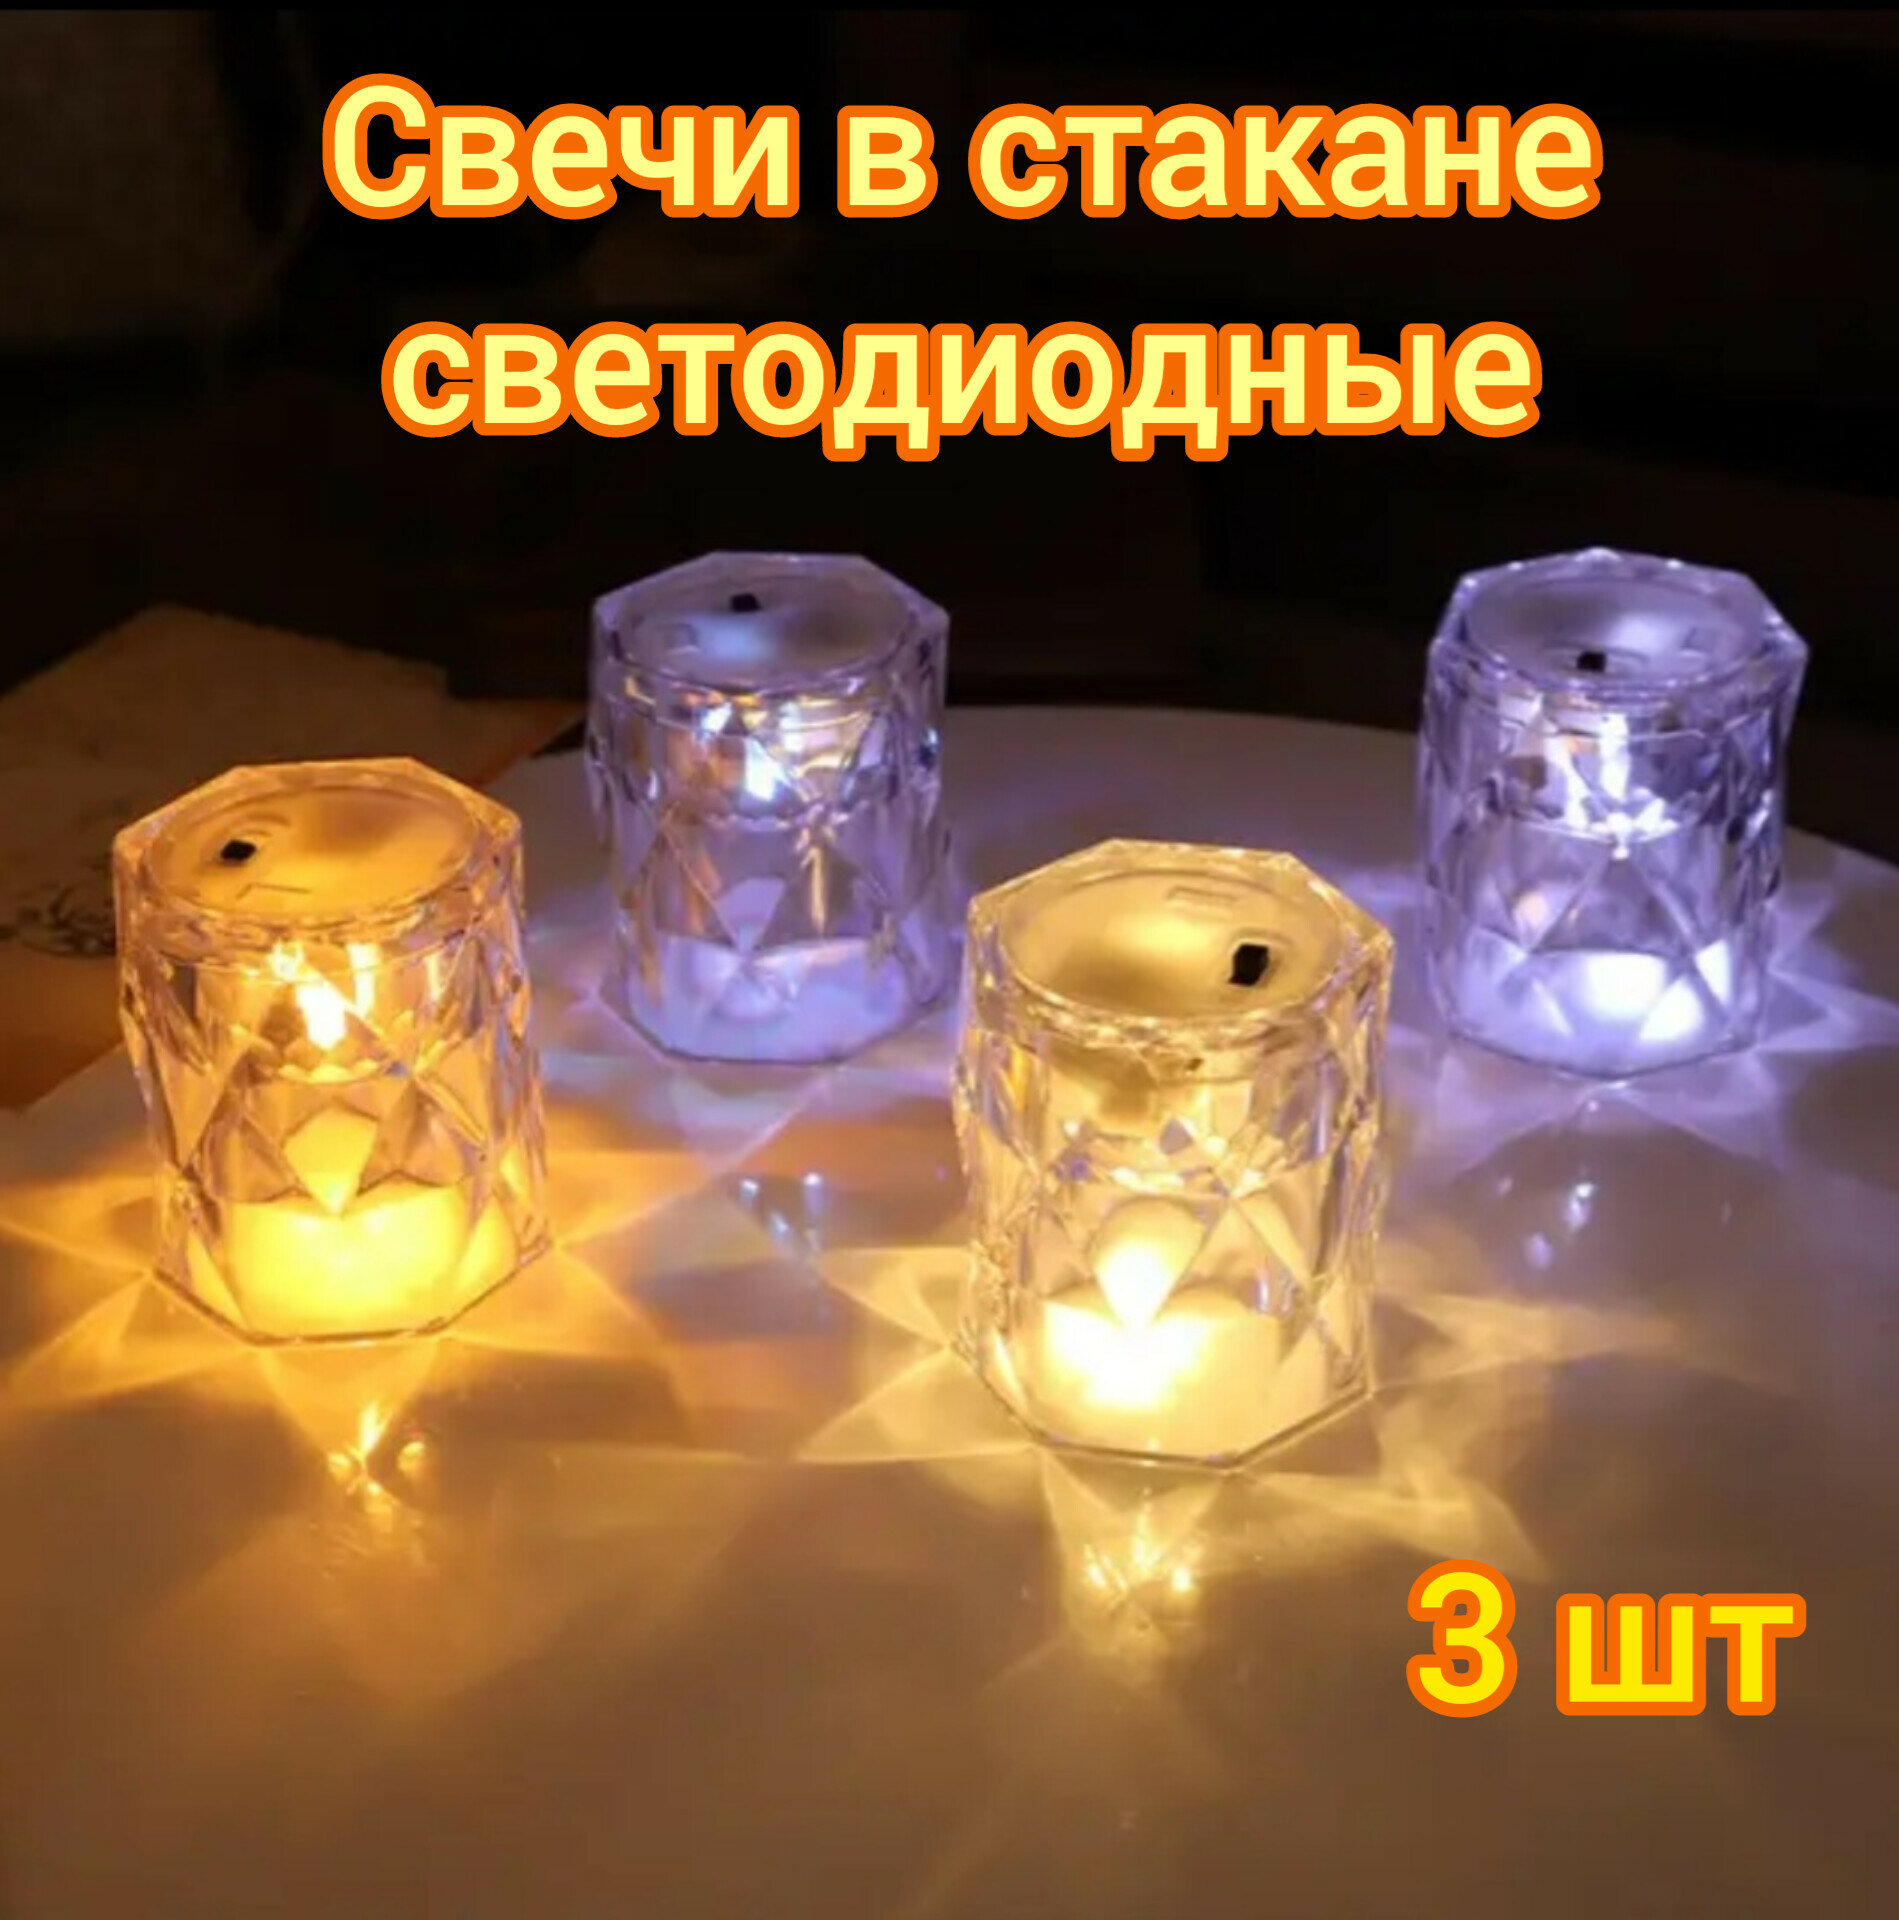 Свечи в стакане светодиодные ночник декоративный на батарейках 3шт